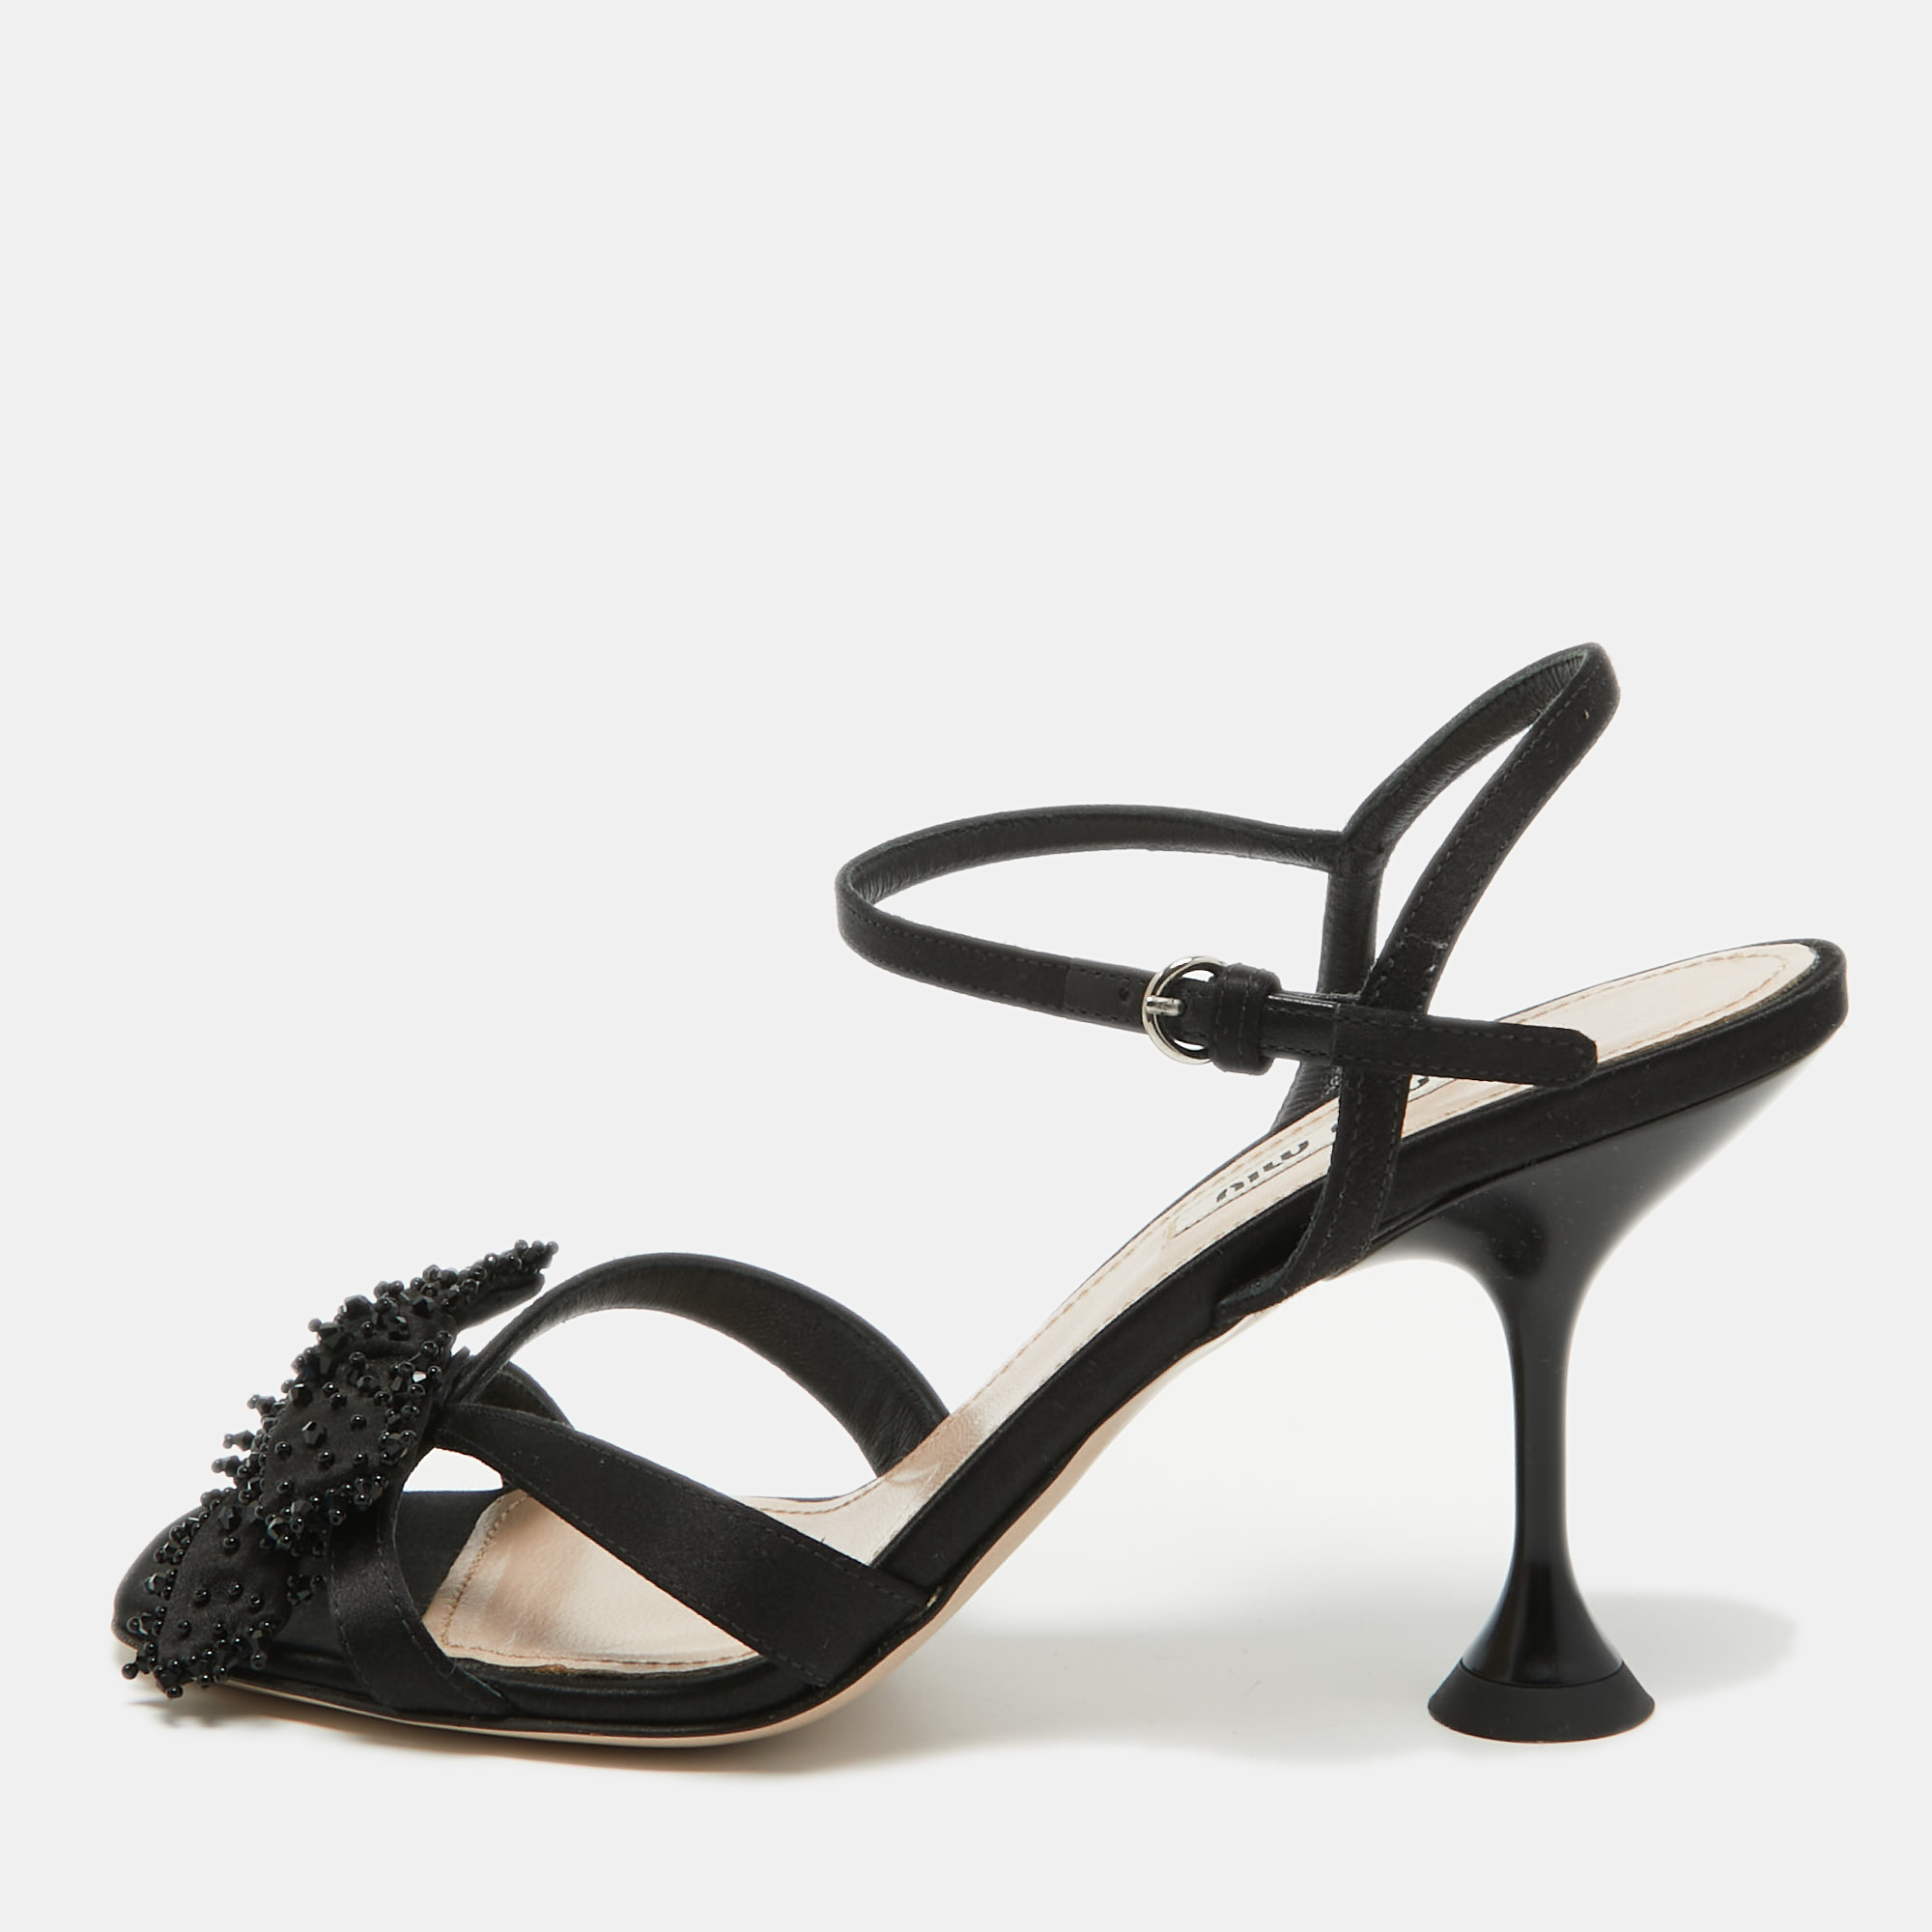 Miu Miu Black Satin Embellished Ankle Strap Sandals Size 37.5